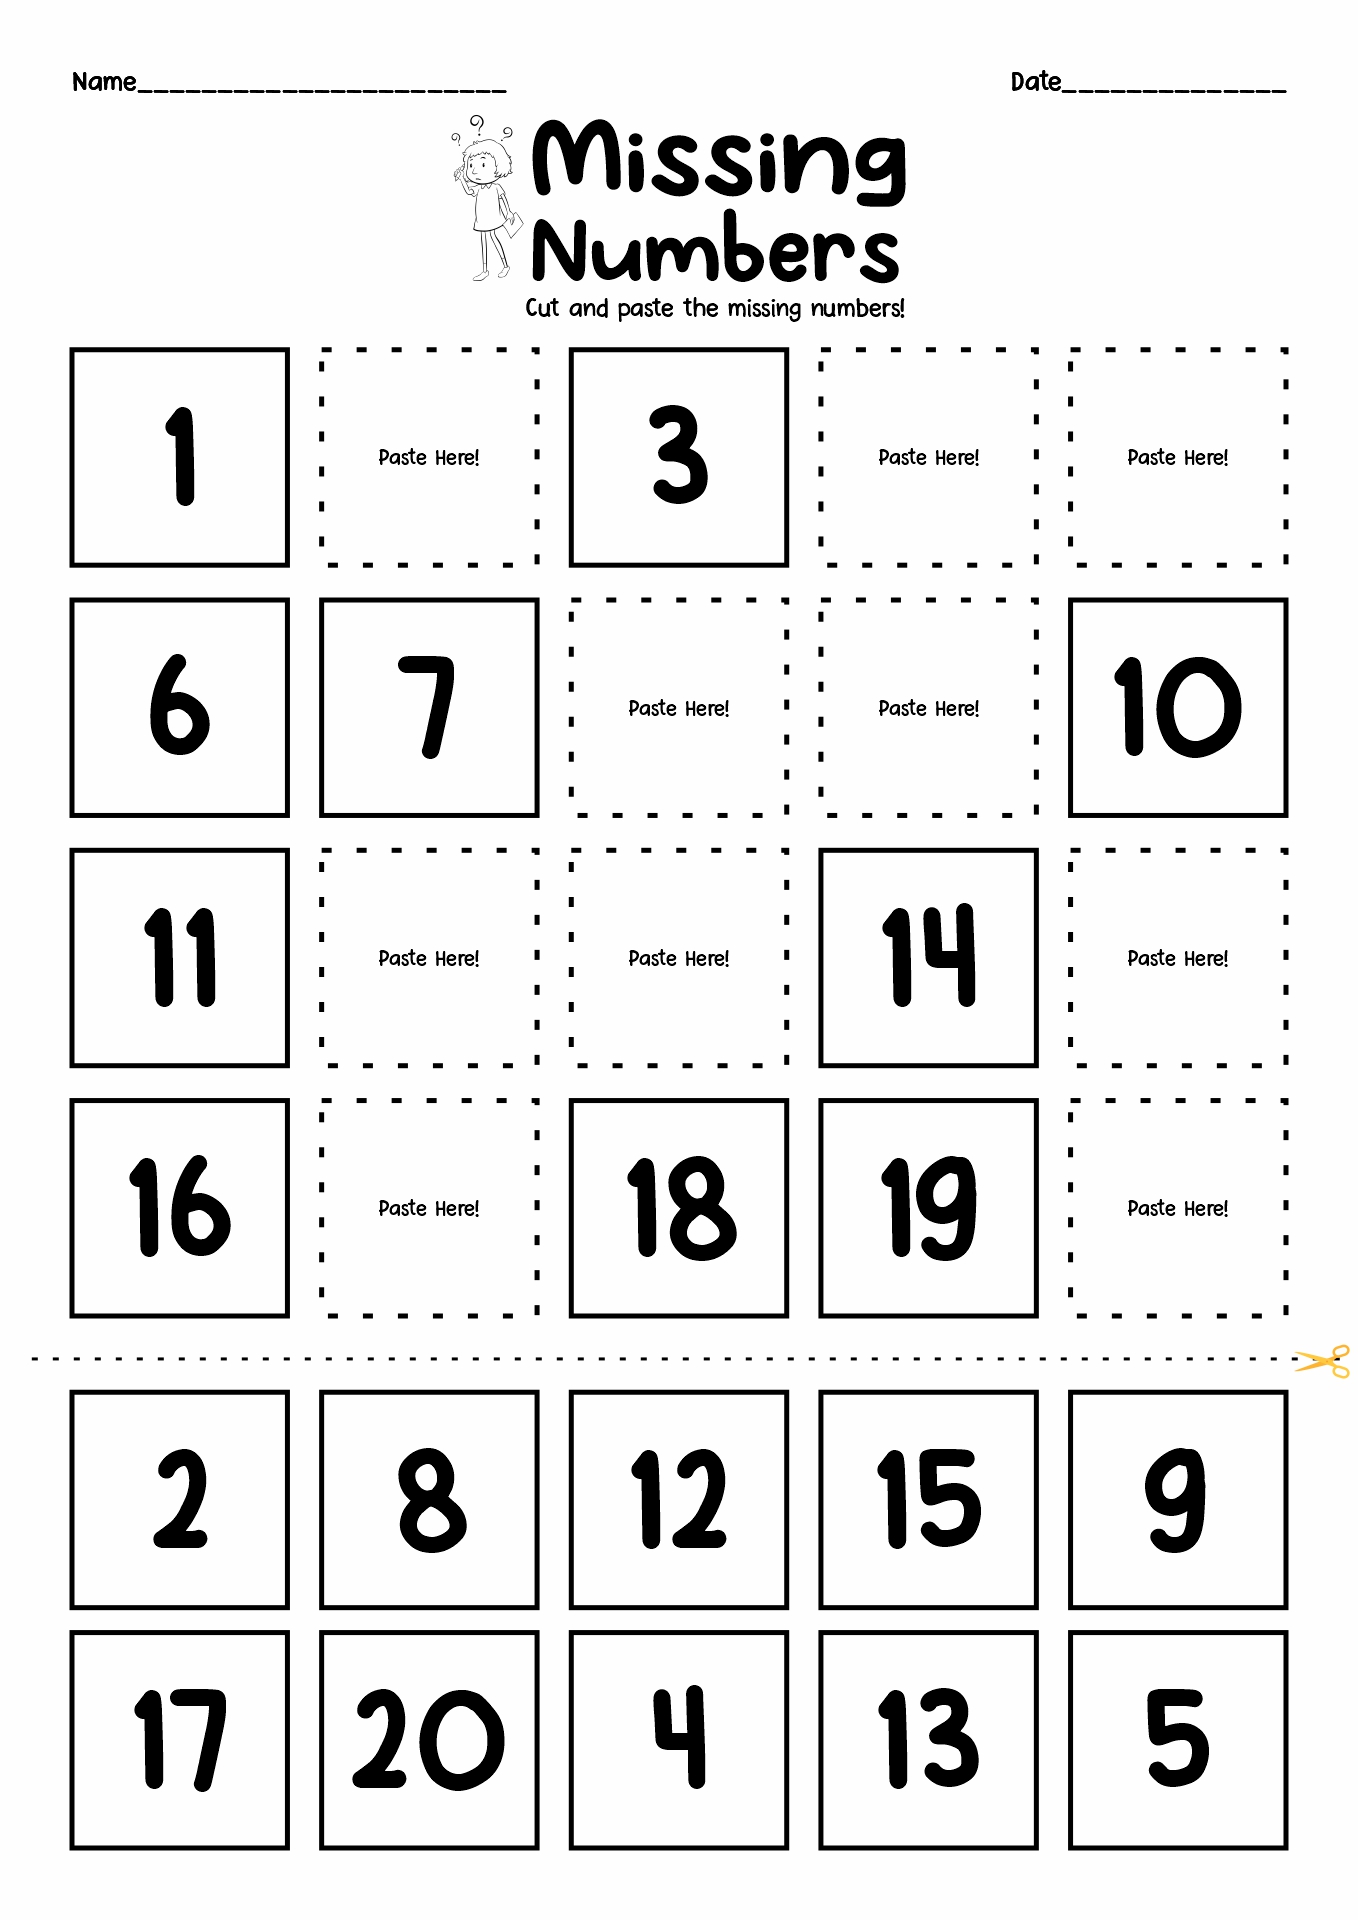 Cut and Paste Missing Number Worksheets for Kindergarten